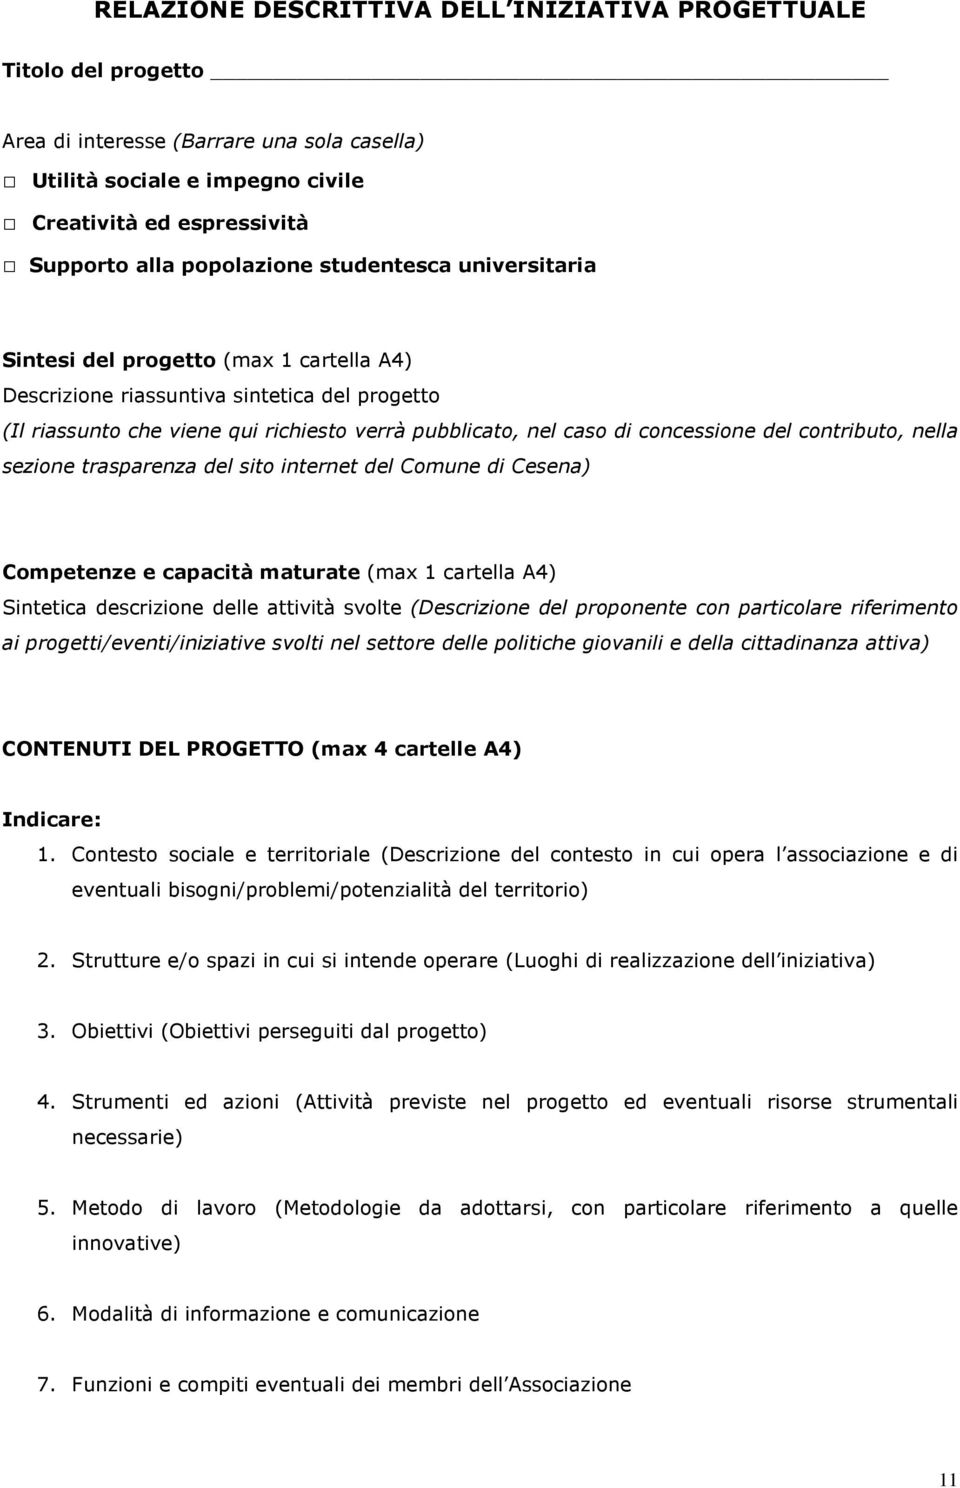 concessione del contributo, nella sezione trasparenza del sito internet del Comune di Cesena) Competenze e capacità maturate (max 1 cartella A4) Sintetica descrizione delle attività svolte